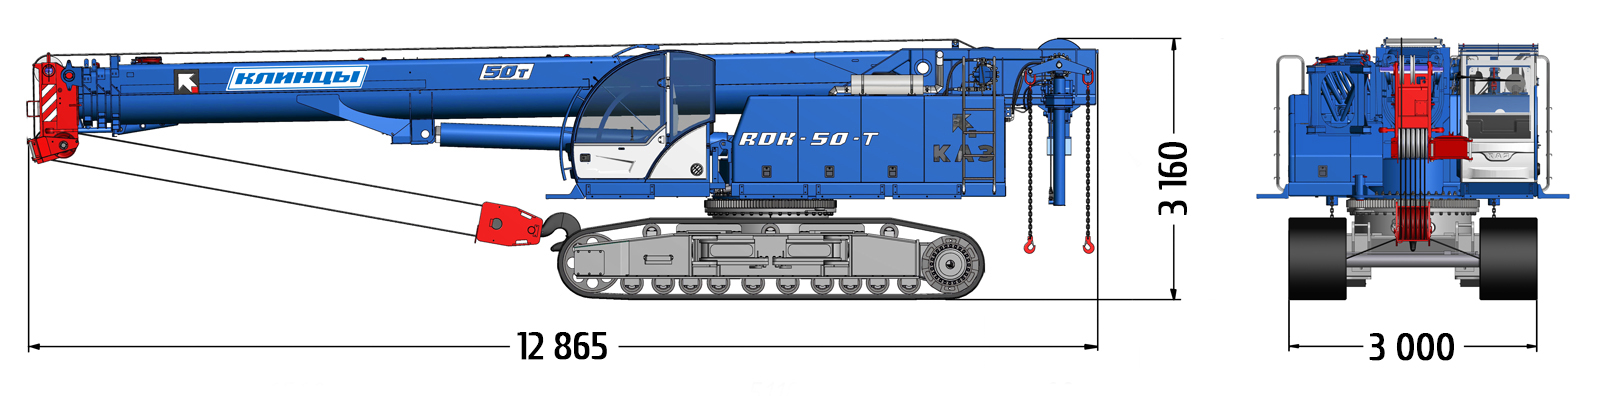 RDK-50Т